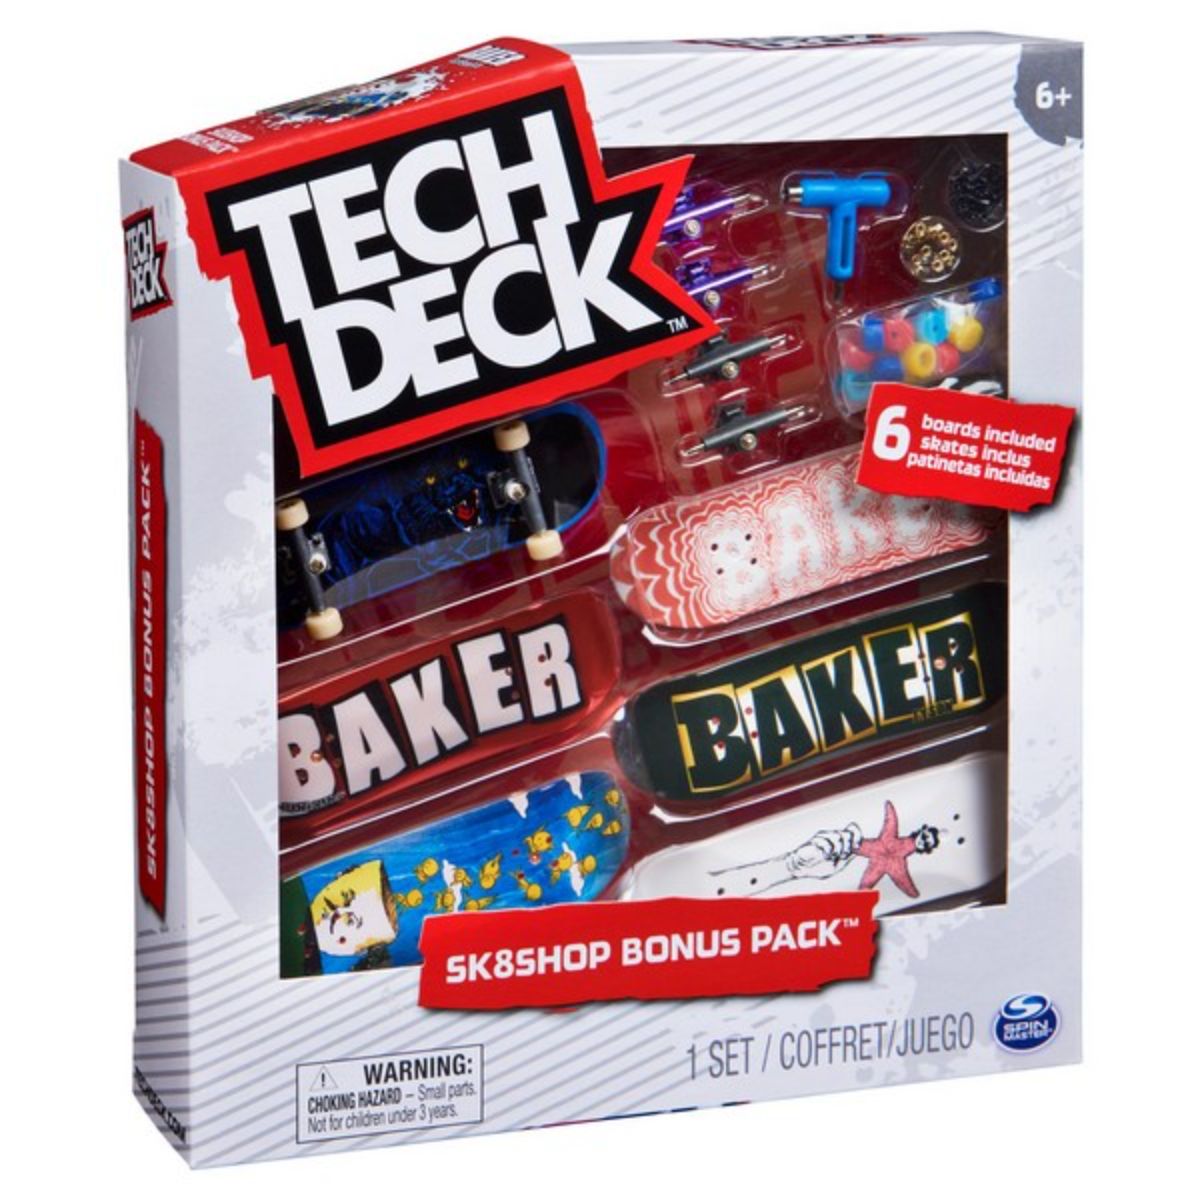 Set 6 mini placi skateboard, Tech Deck, Bonus Pack 20136698